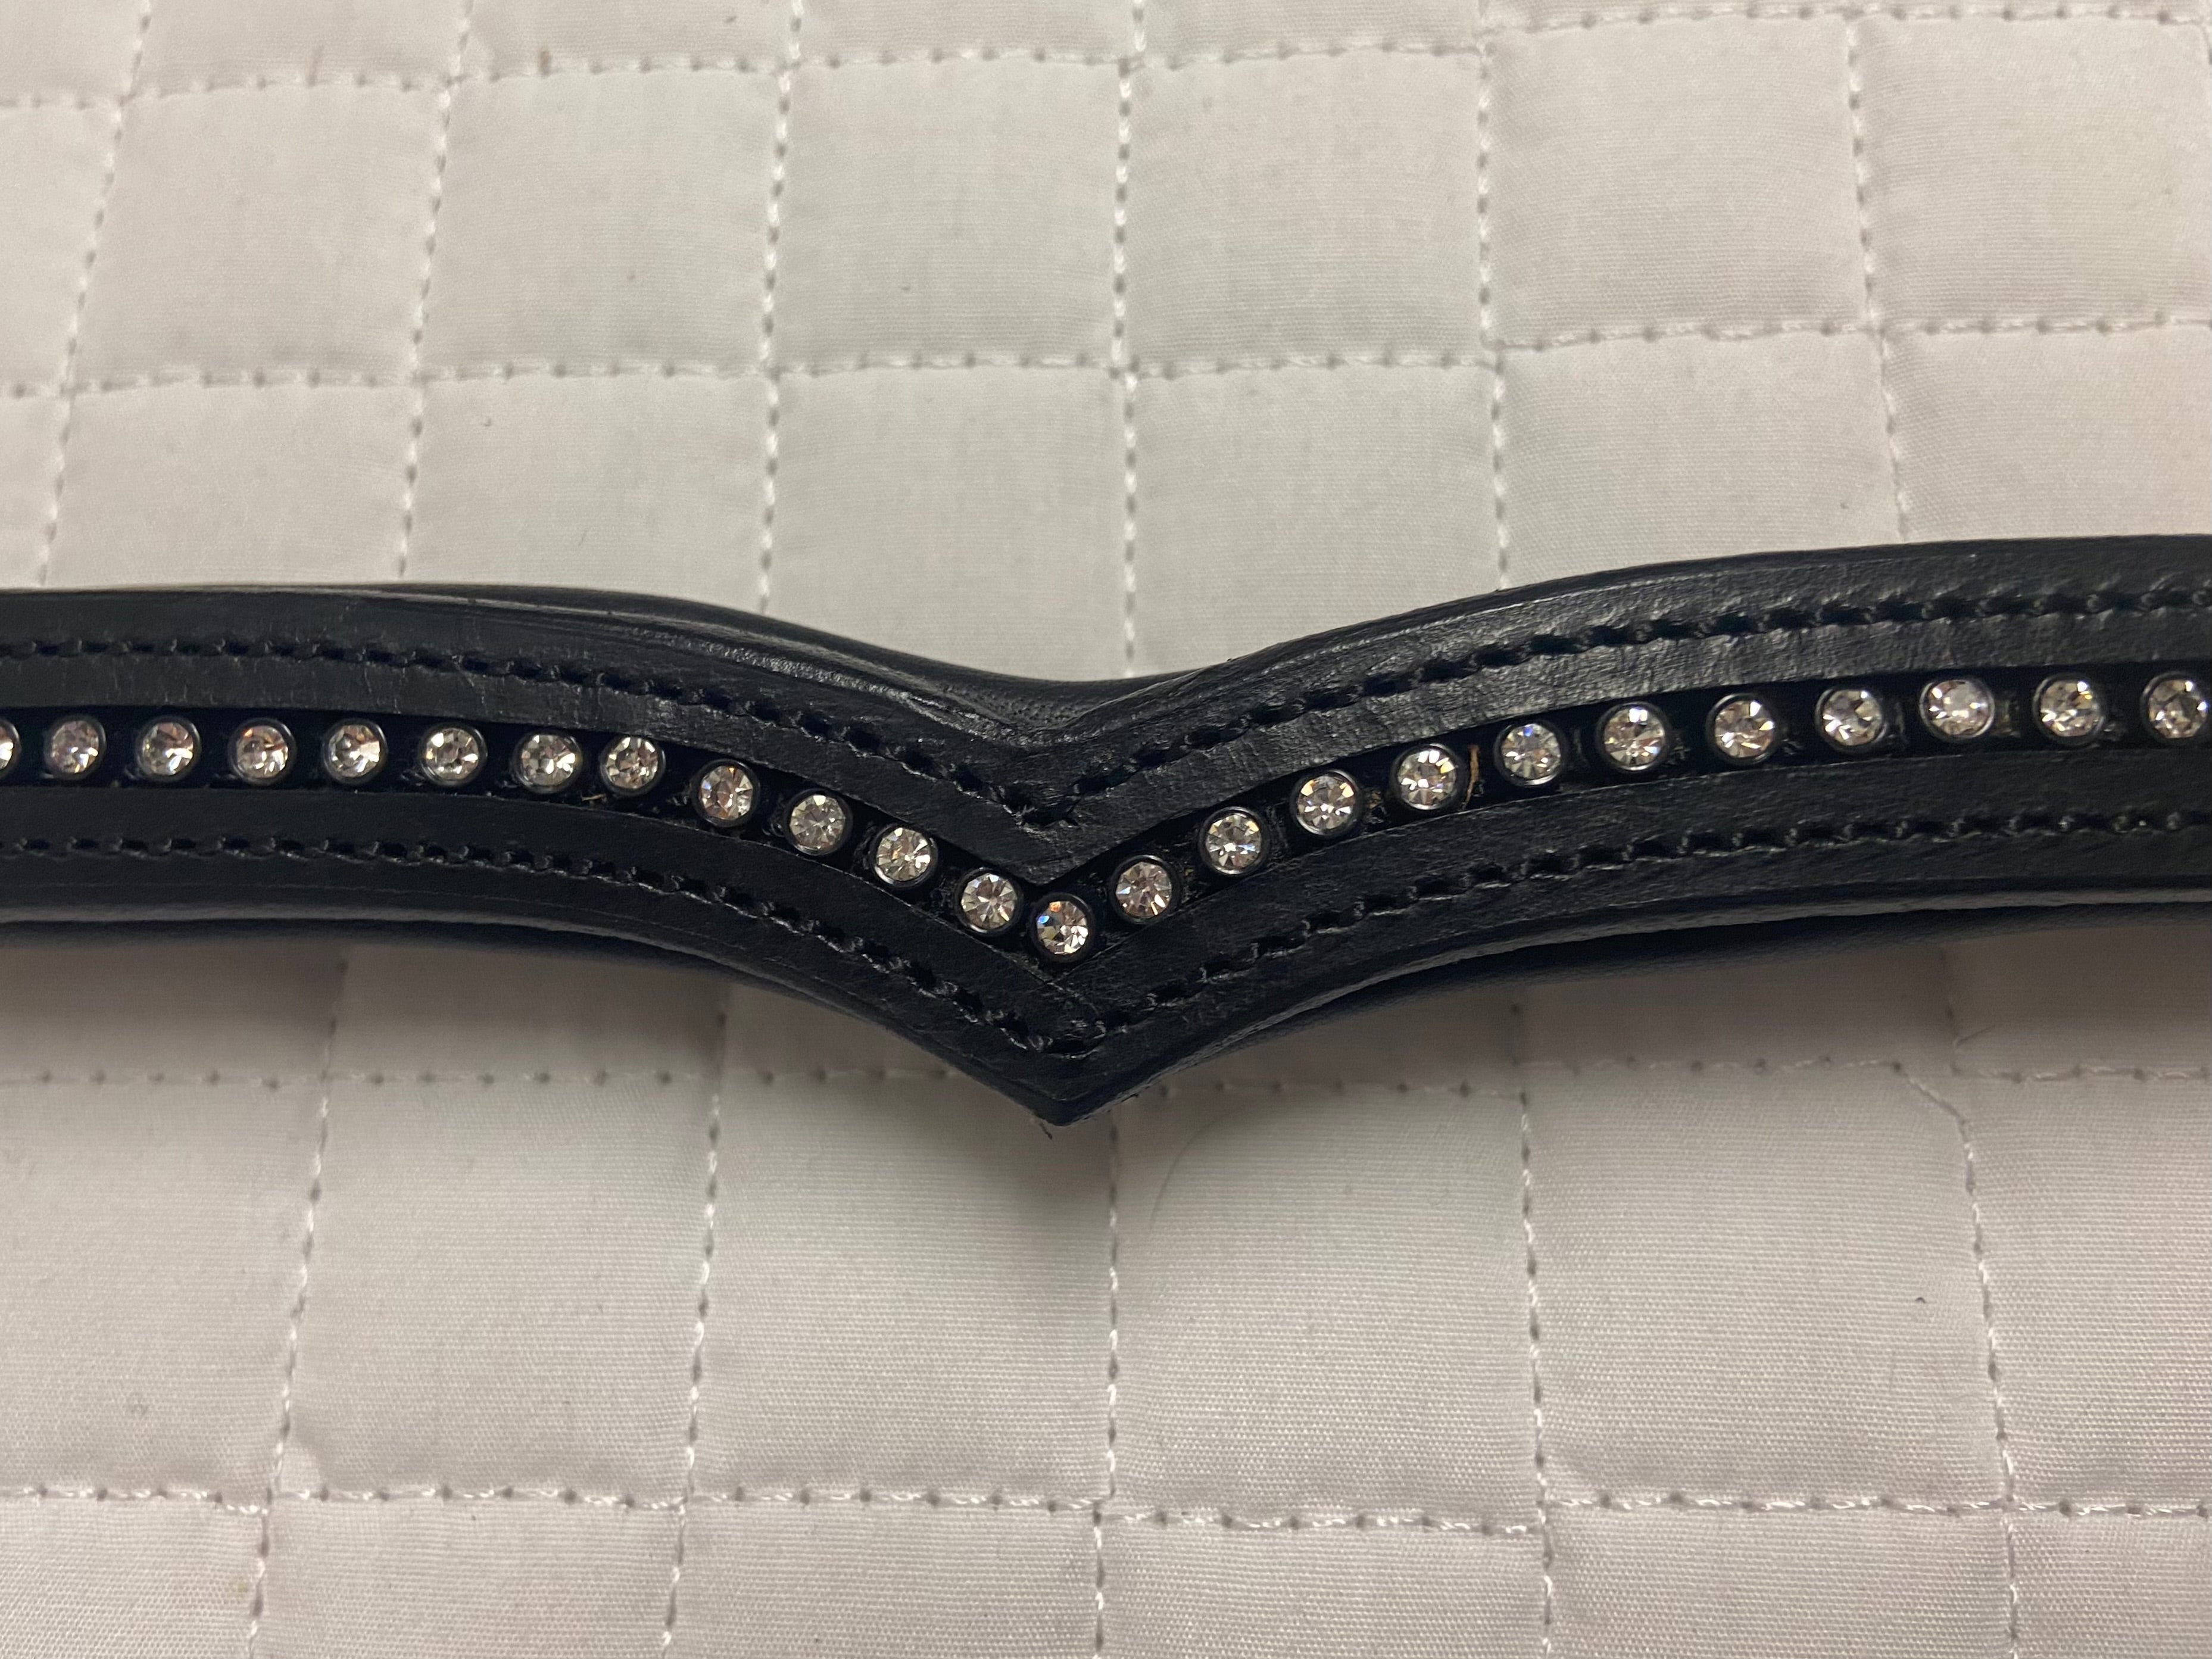 KL Italia V Shaped Black Leather Horse size Browband